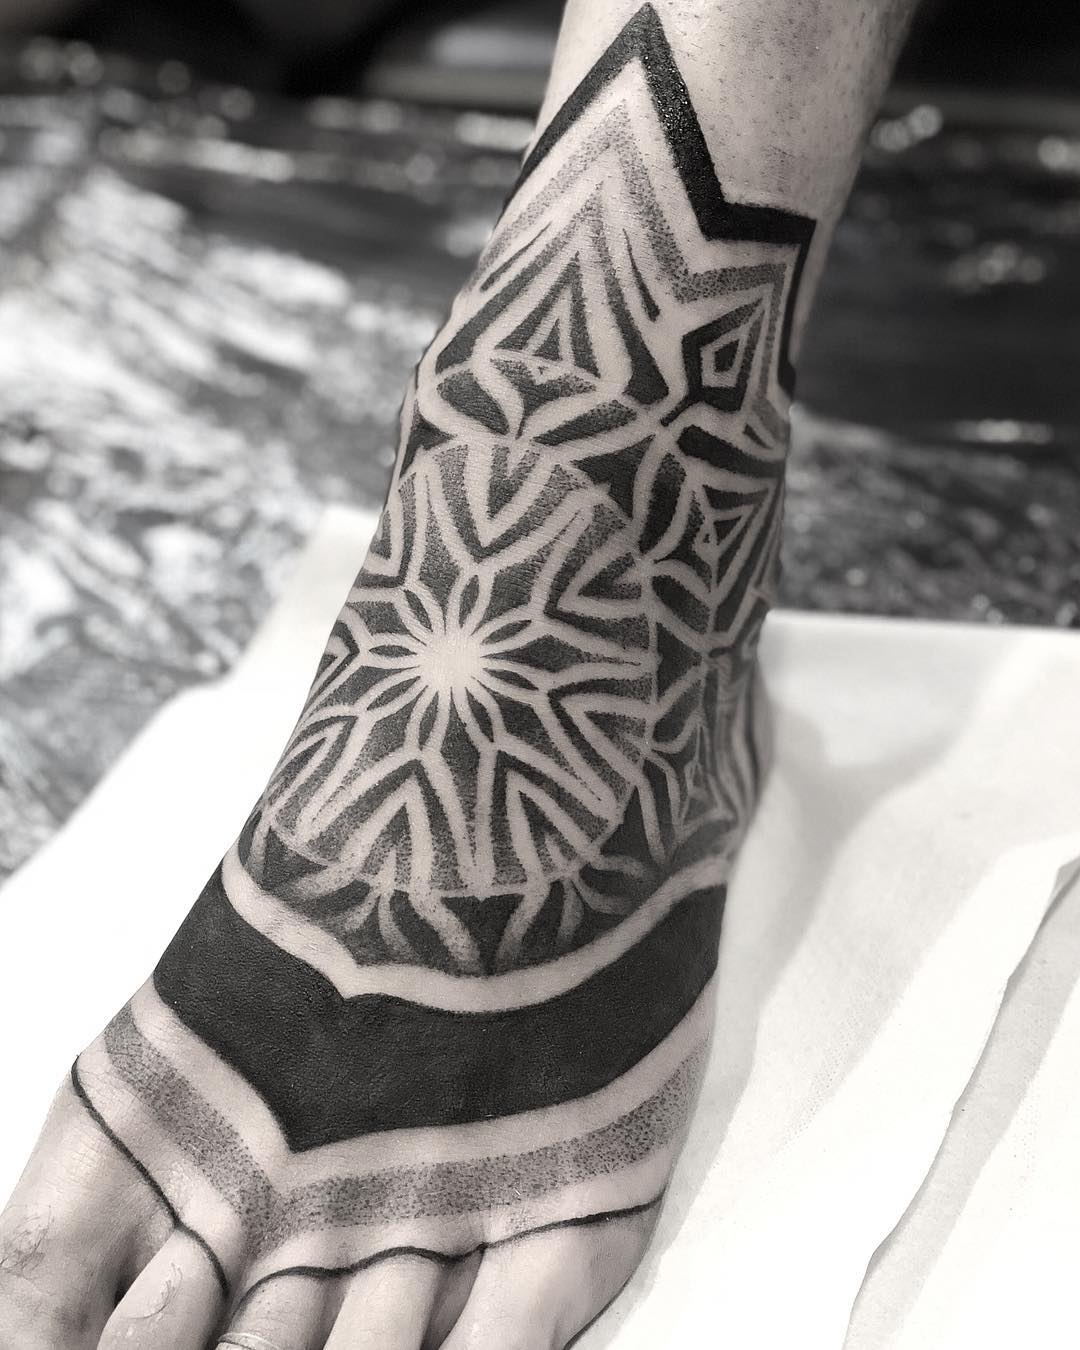 Tetování nohou inspirované mandalou vypadá jako akcie